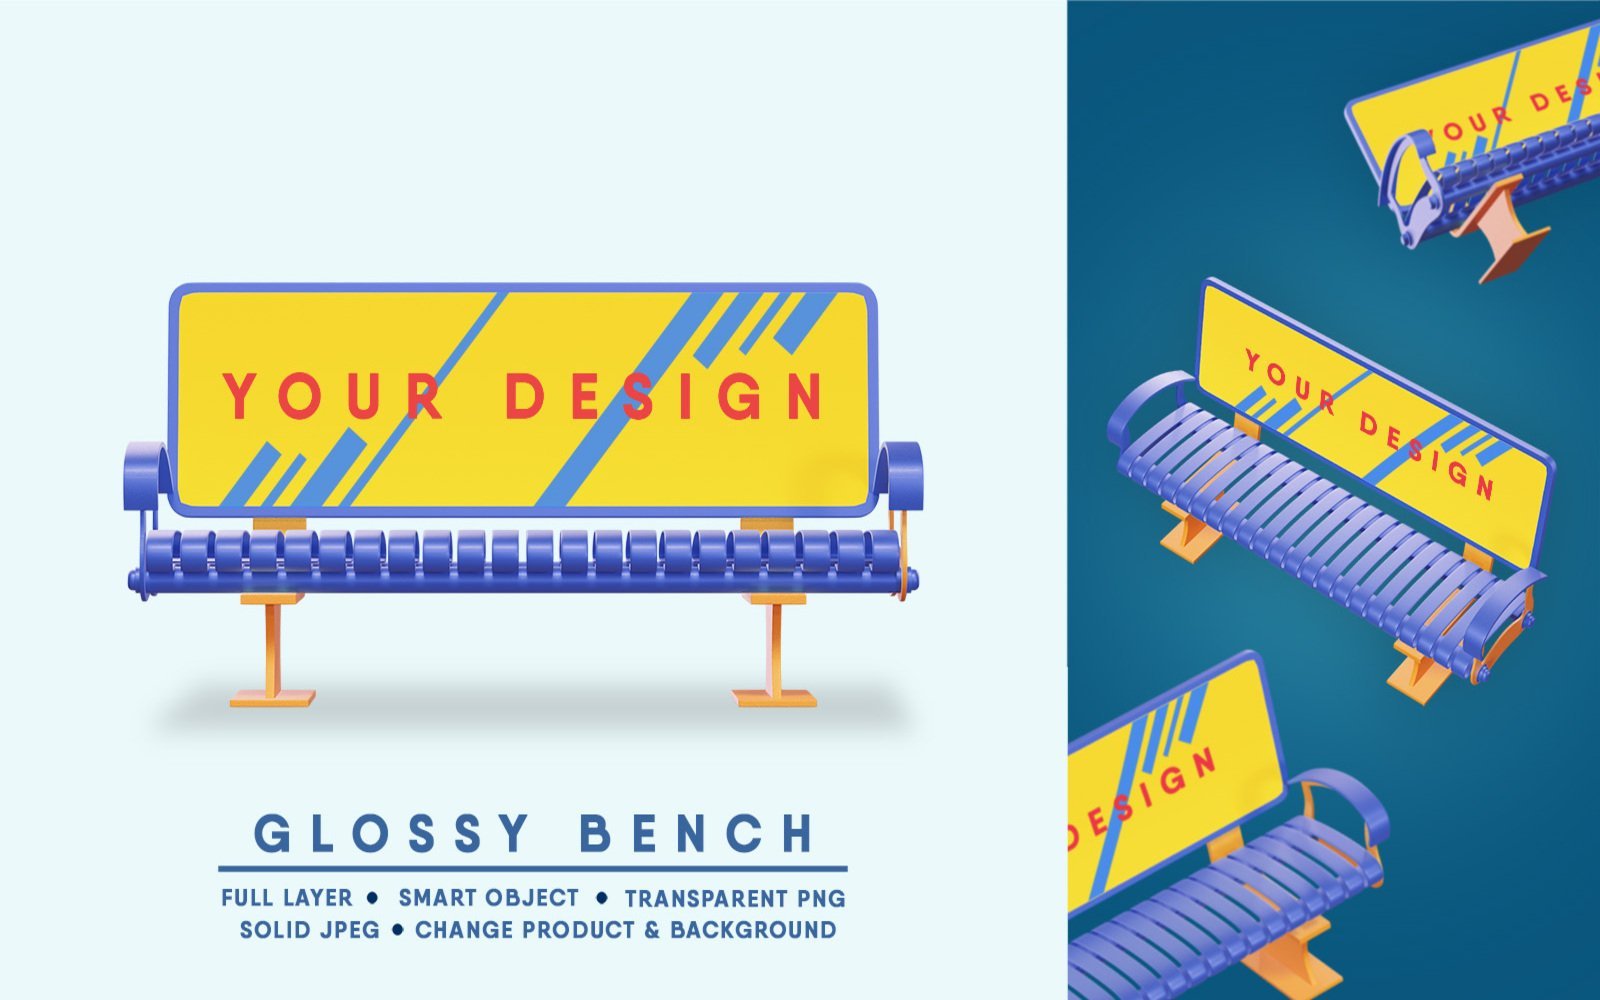 Kit Graphique #400485 Interieur Image Web Design - Logo template Preview